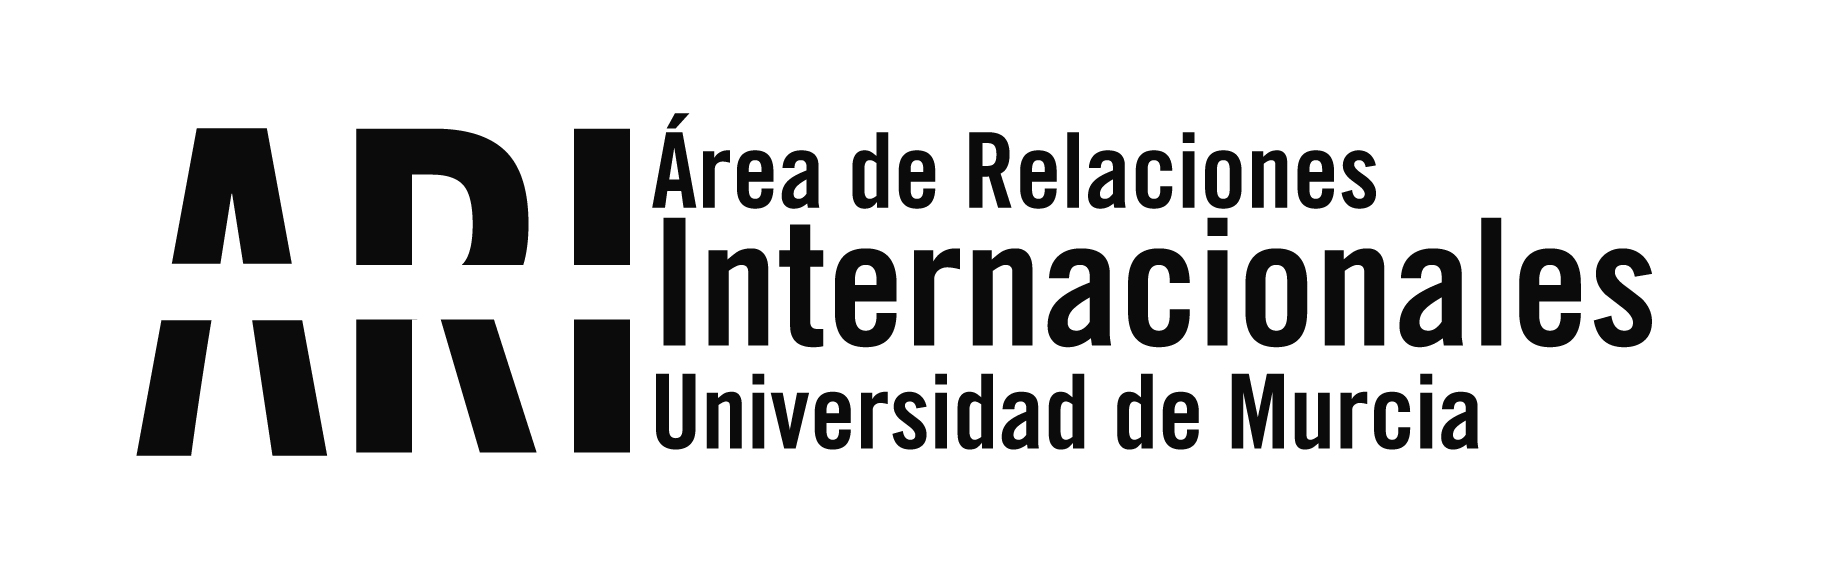 10º Aniversario de la firma del Convenio de Colaboración entre la Universidad de Murcia y la Communication University of China entre la UMU - Área de Relaciones Internacionales